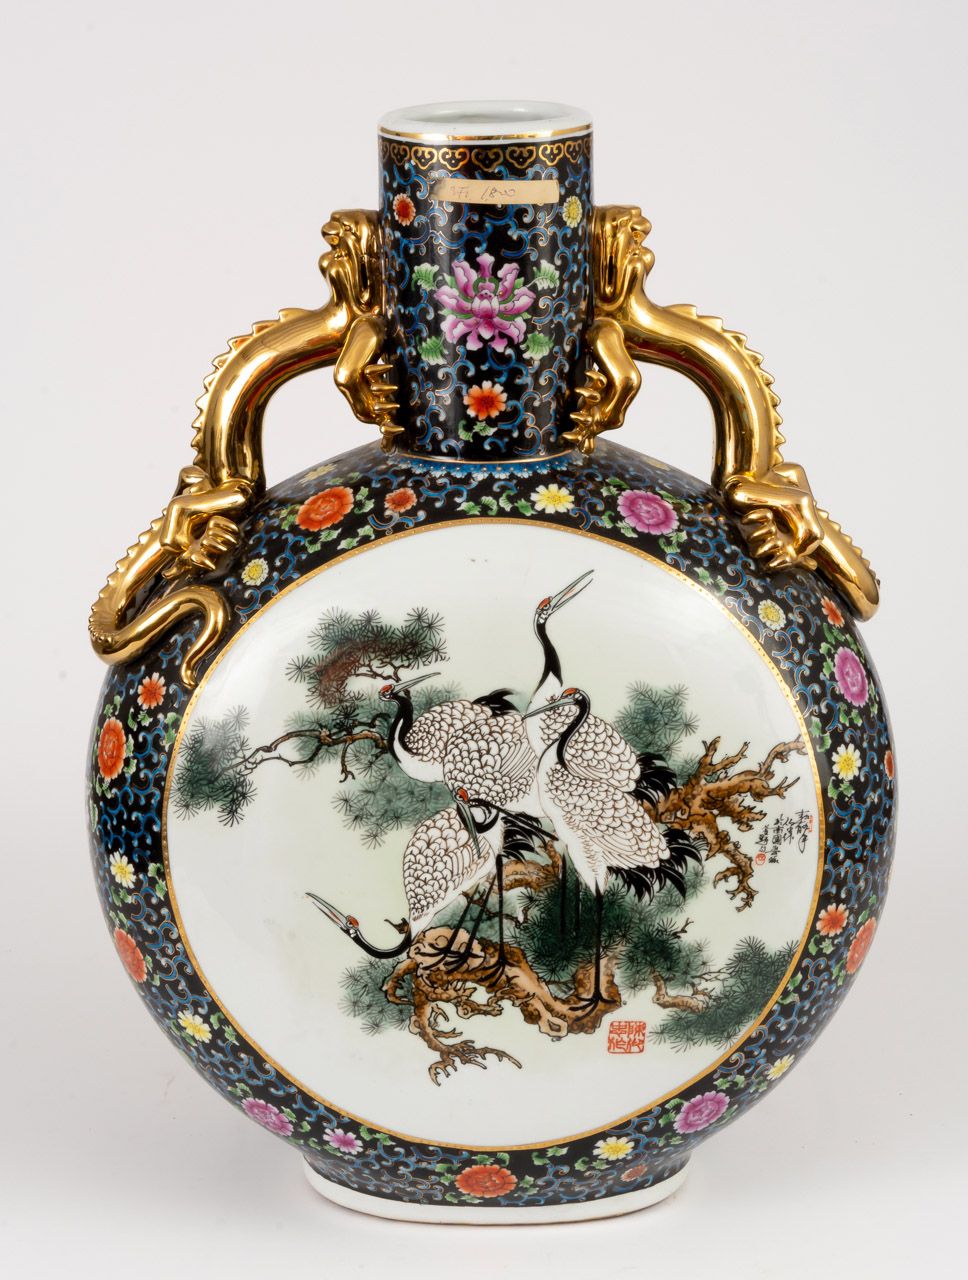 SEHR GROSSE VASE MIT BLUMEN UND VÖGELN China, porcelana, pintada a mano

61 x 45&hellip;